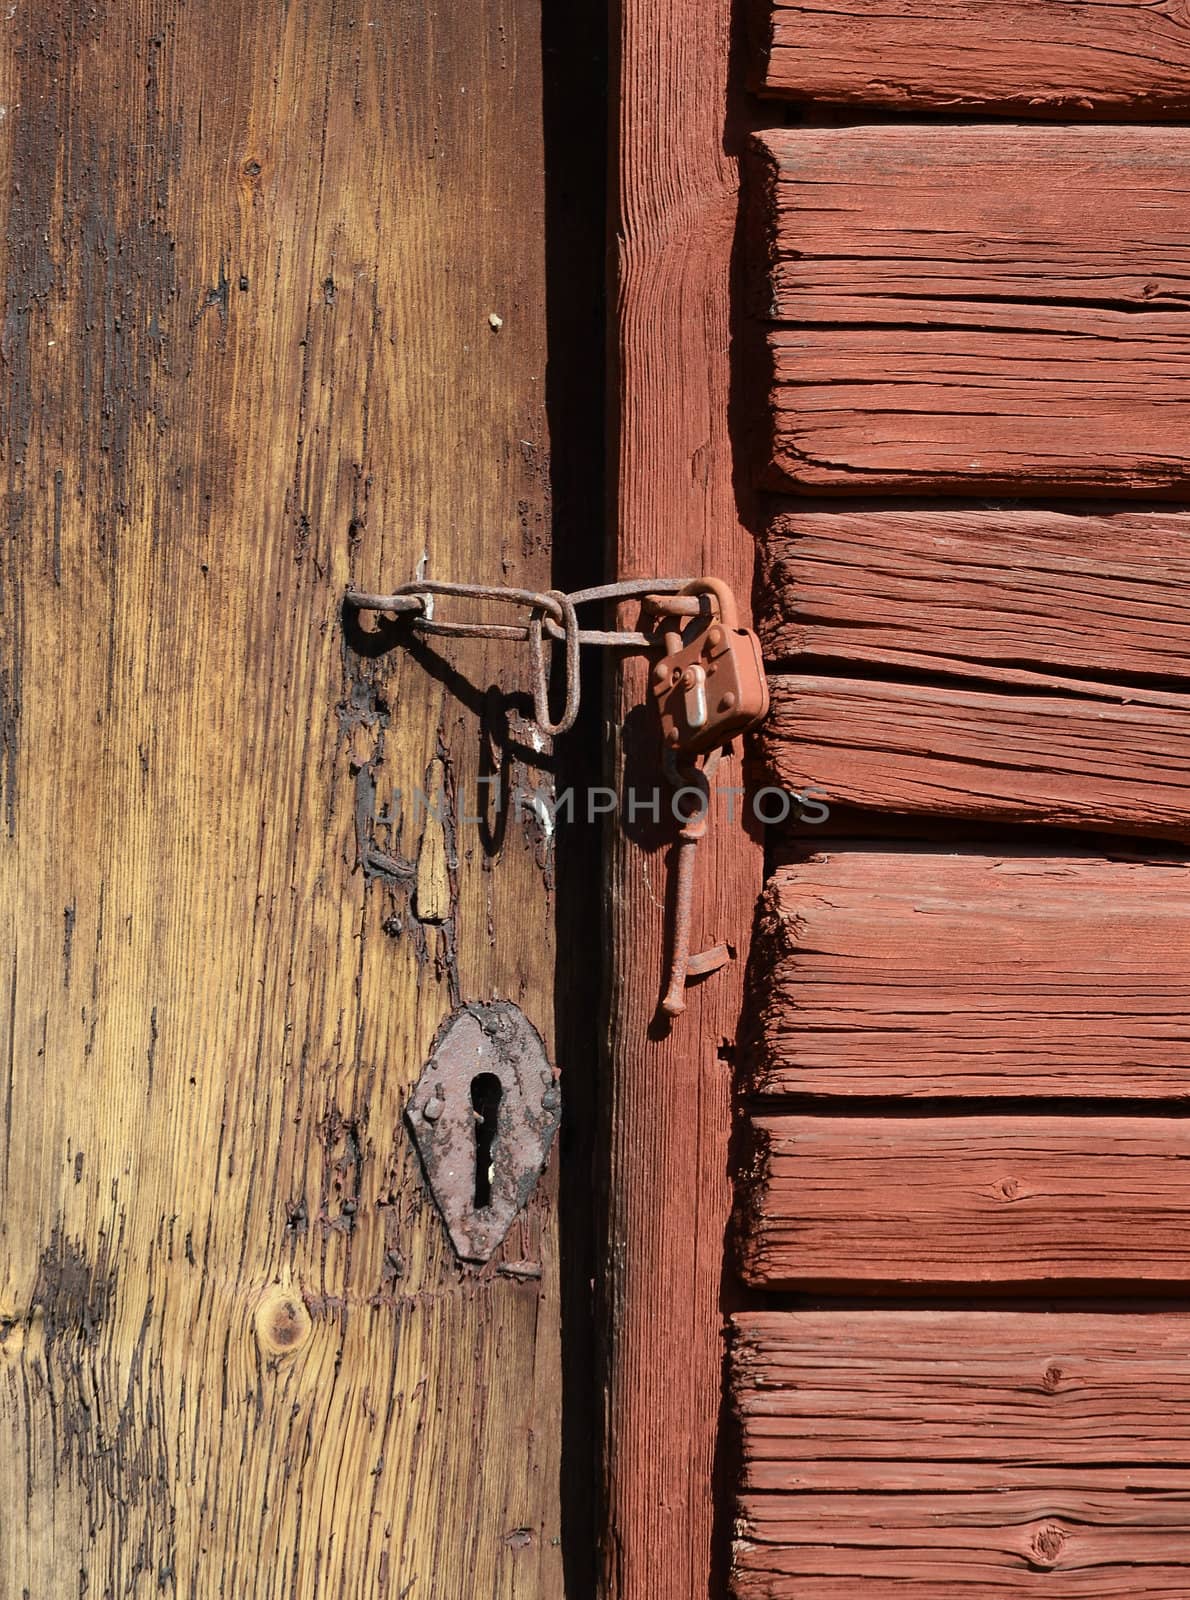 Antique locks by ljusnan69